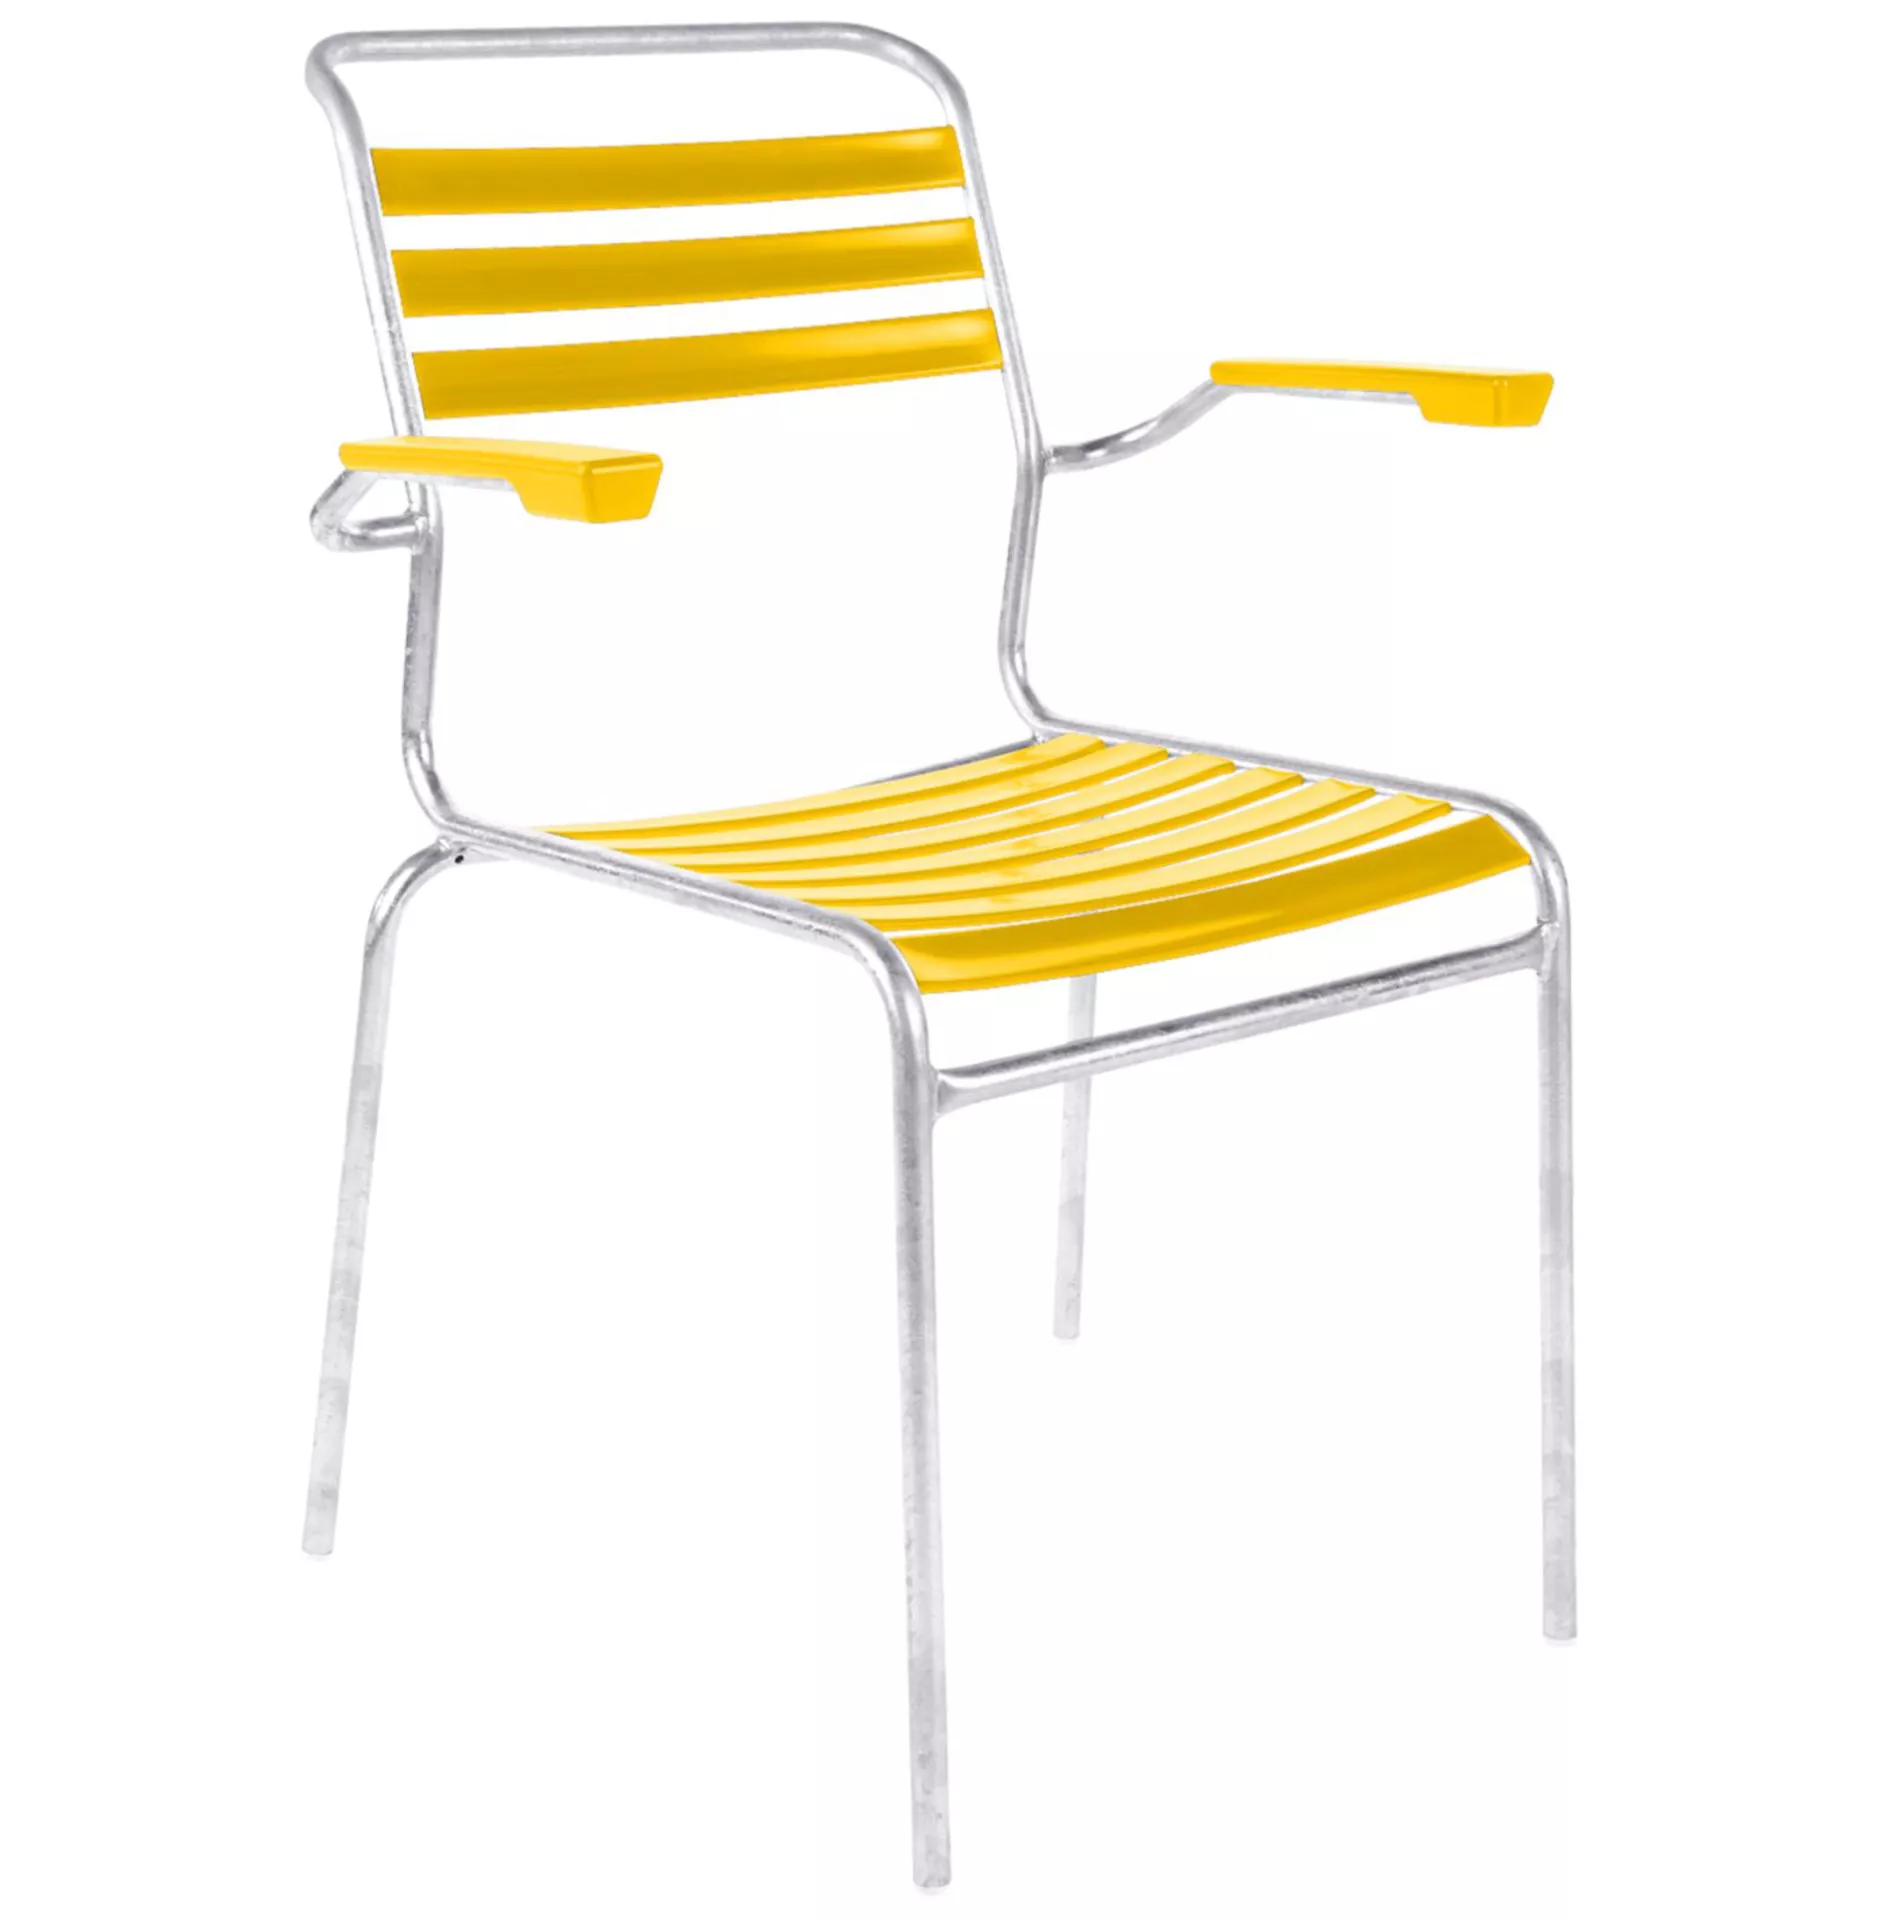 Lättli-Stuhl Säntis mit Armlehnen Schaffner / Farbe: Gelb